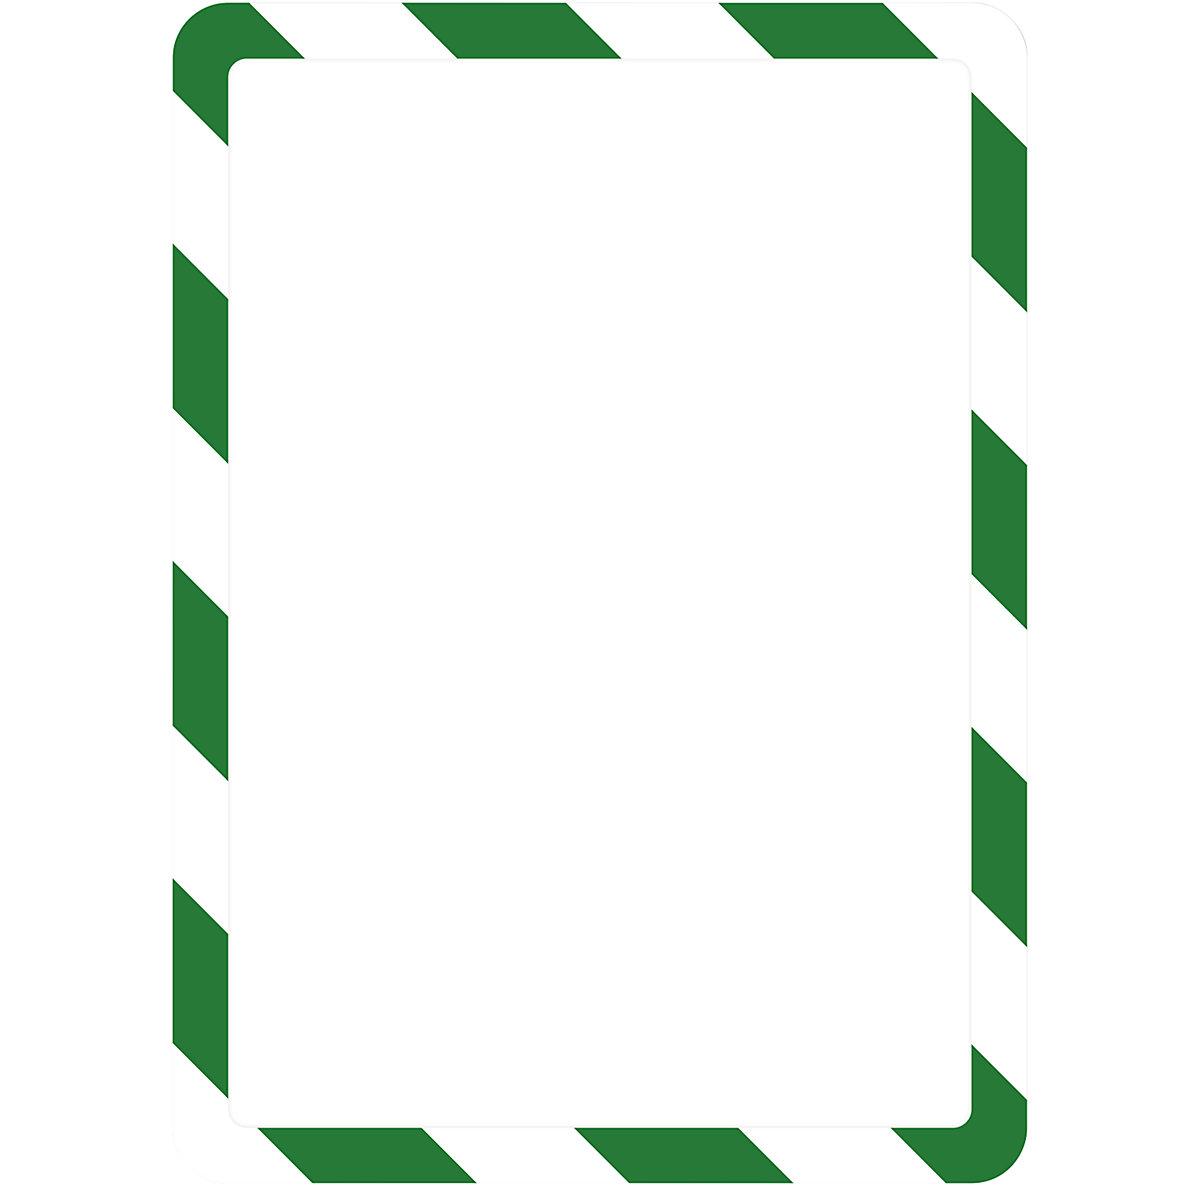 Pochette de présentation A4 – Tarifold, avec fermeture magnétique, autocollant, vert / blanc, lot de 2-5